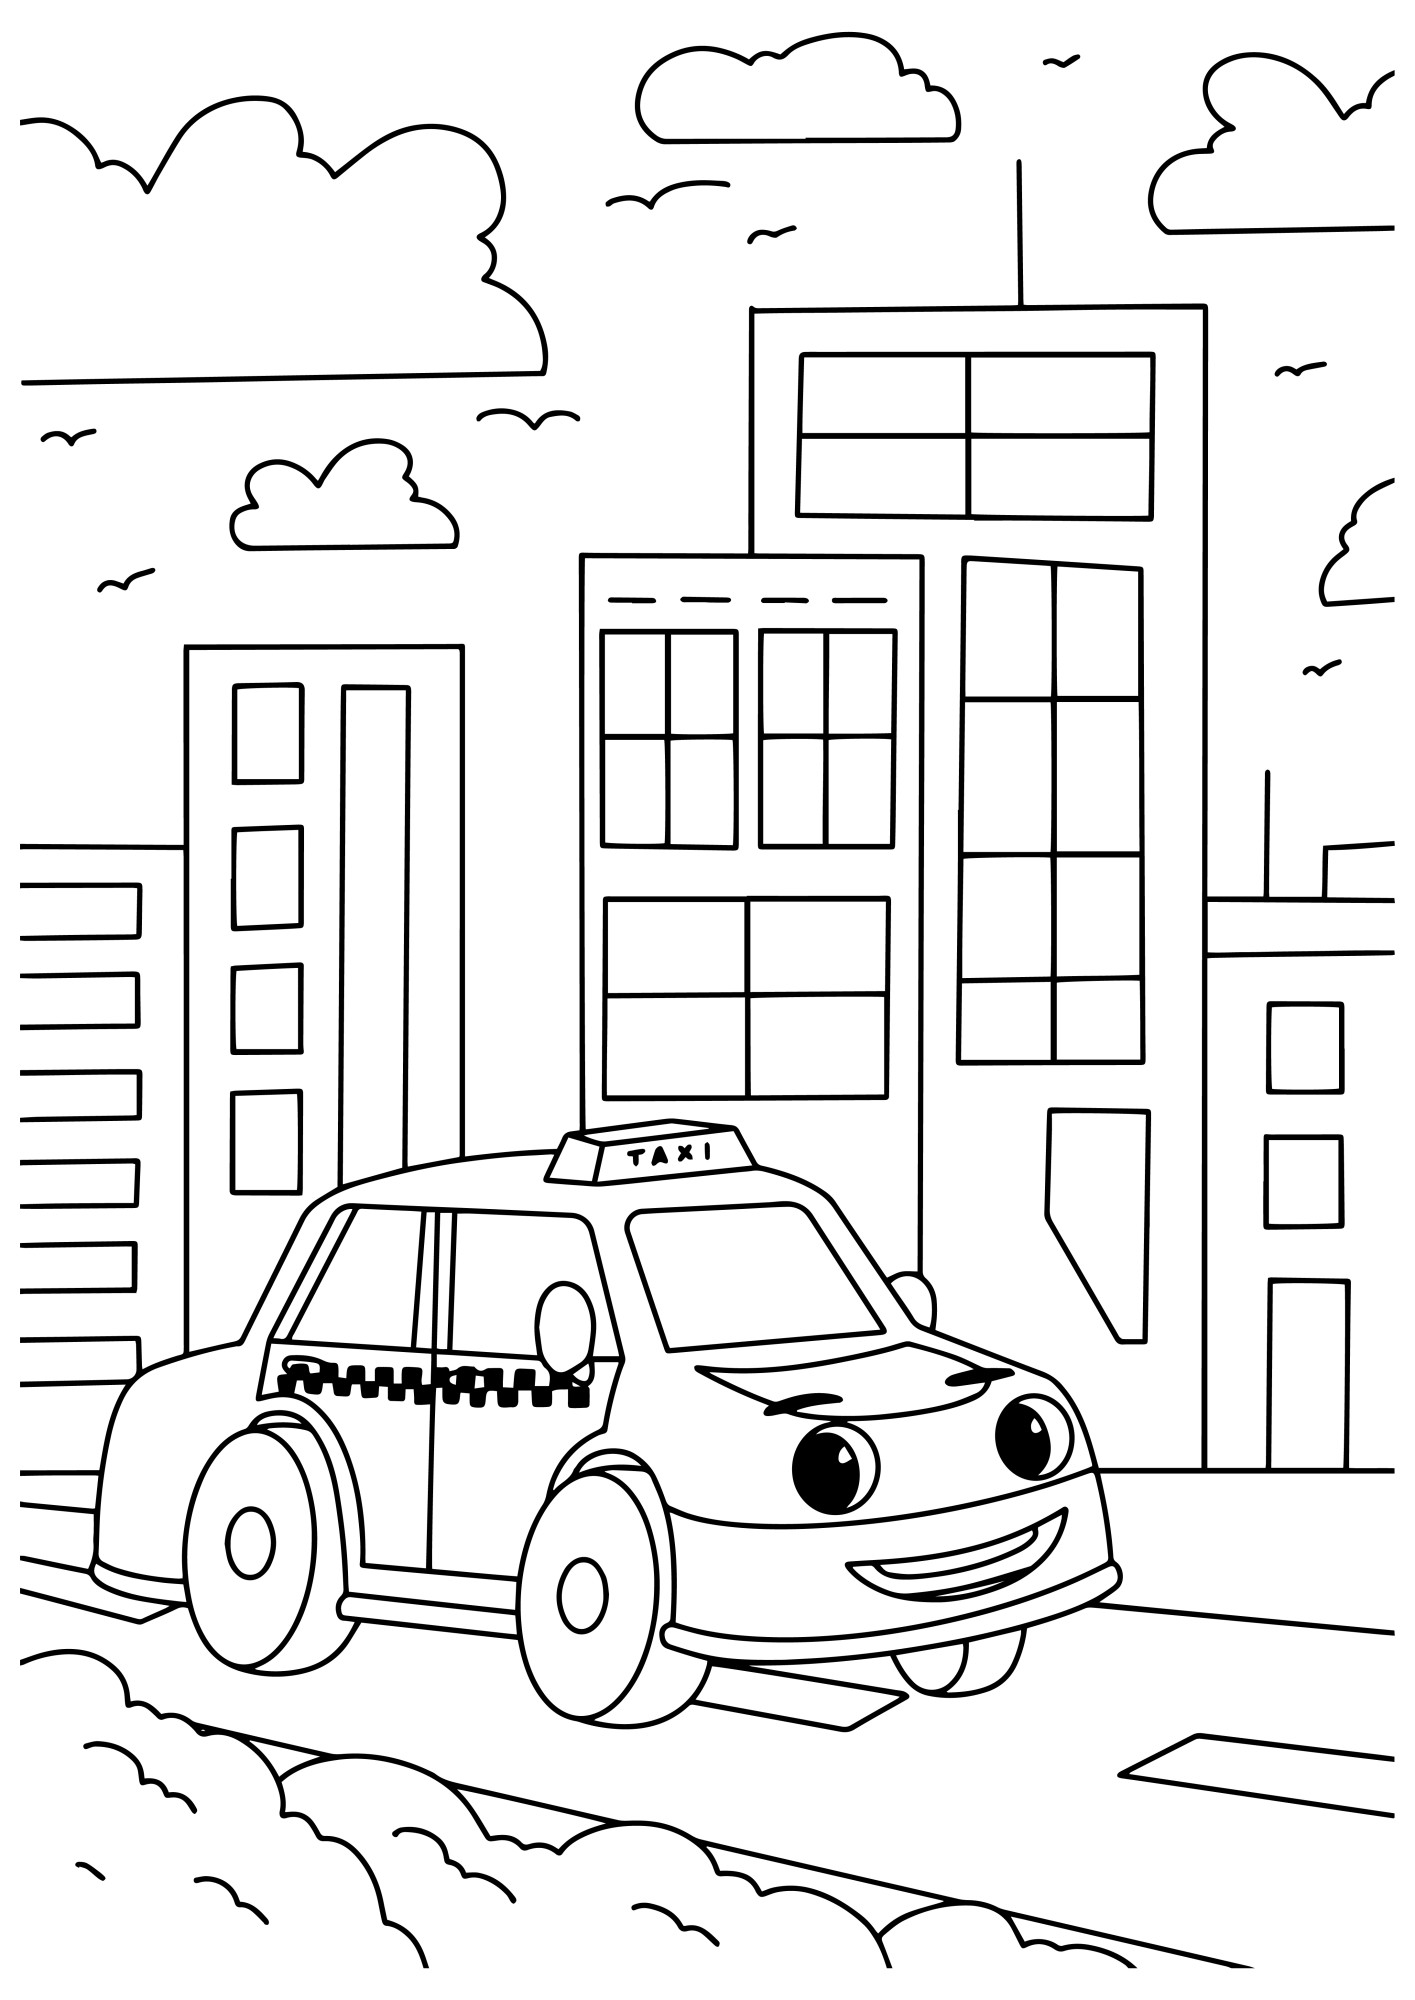 Раскраска для детей: мультяшное такси с глазами едет по городу